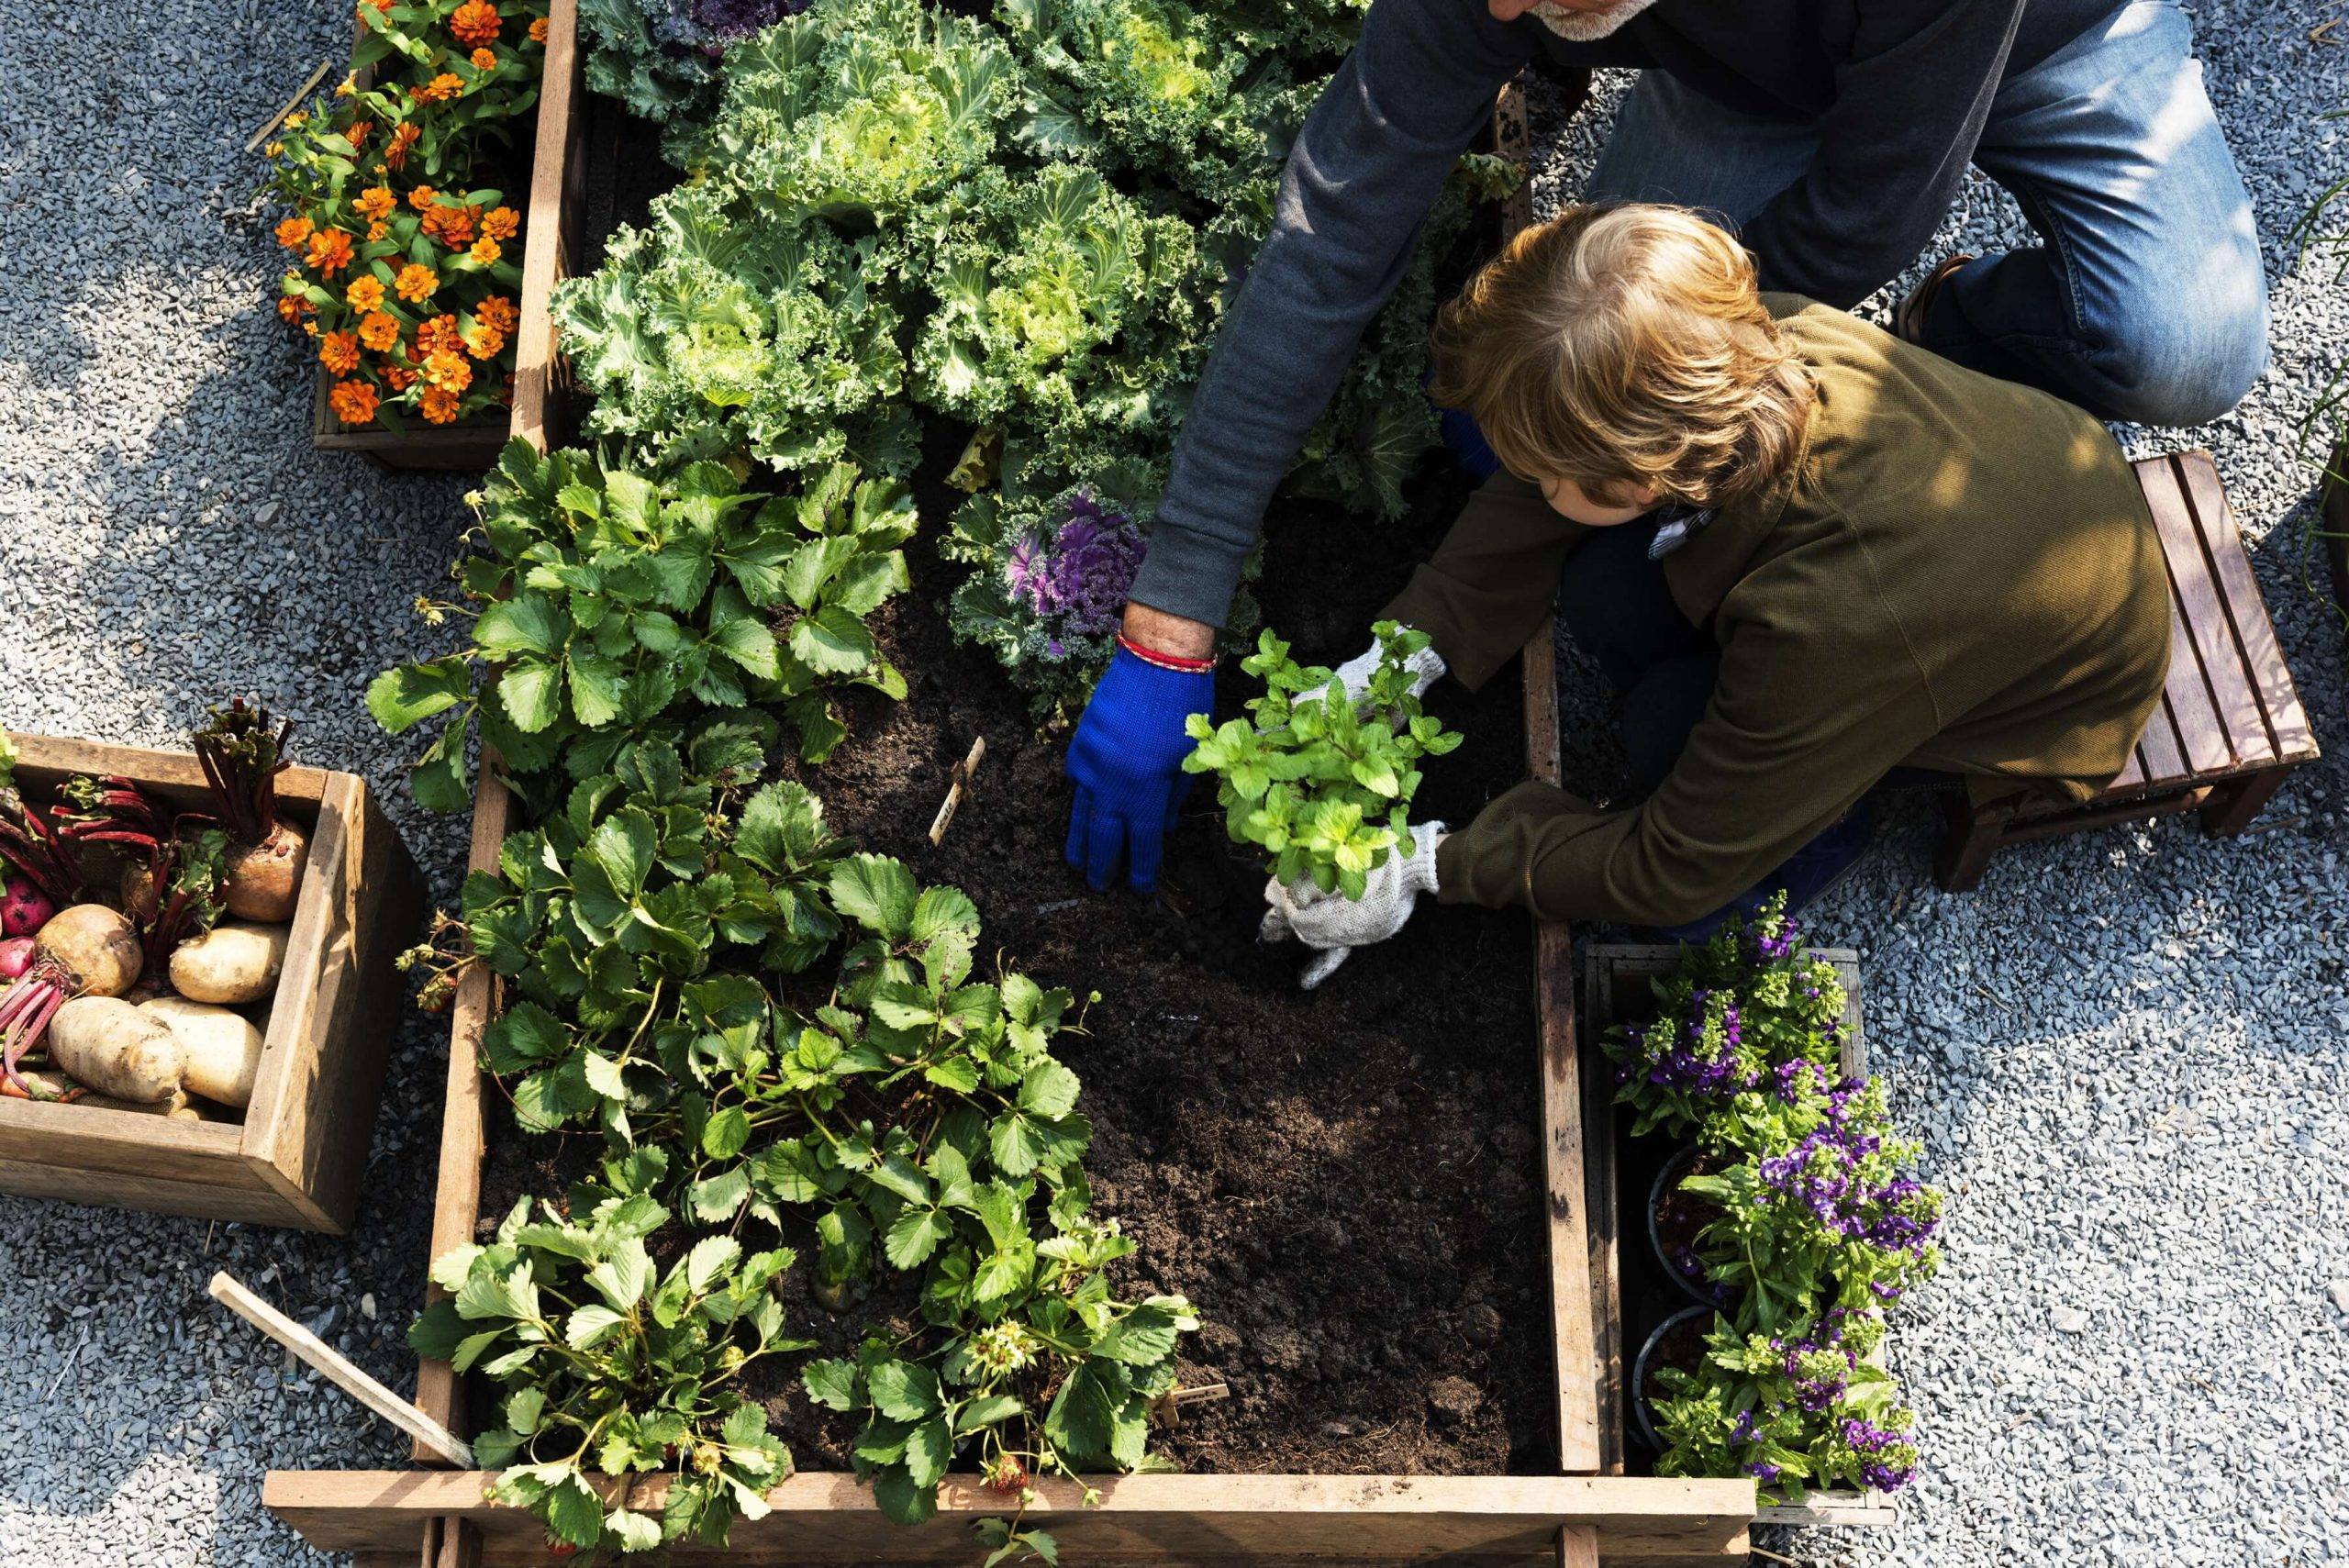 Veggie Garden Ideas – How to Start Your Own